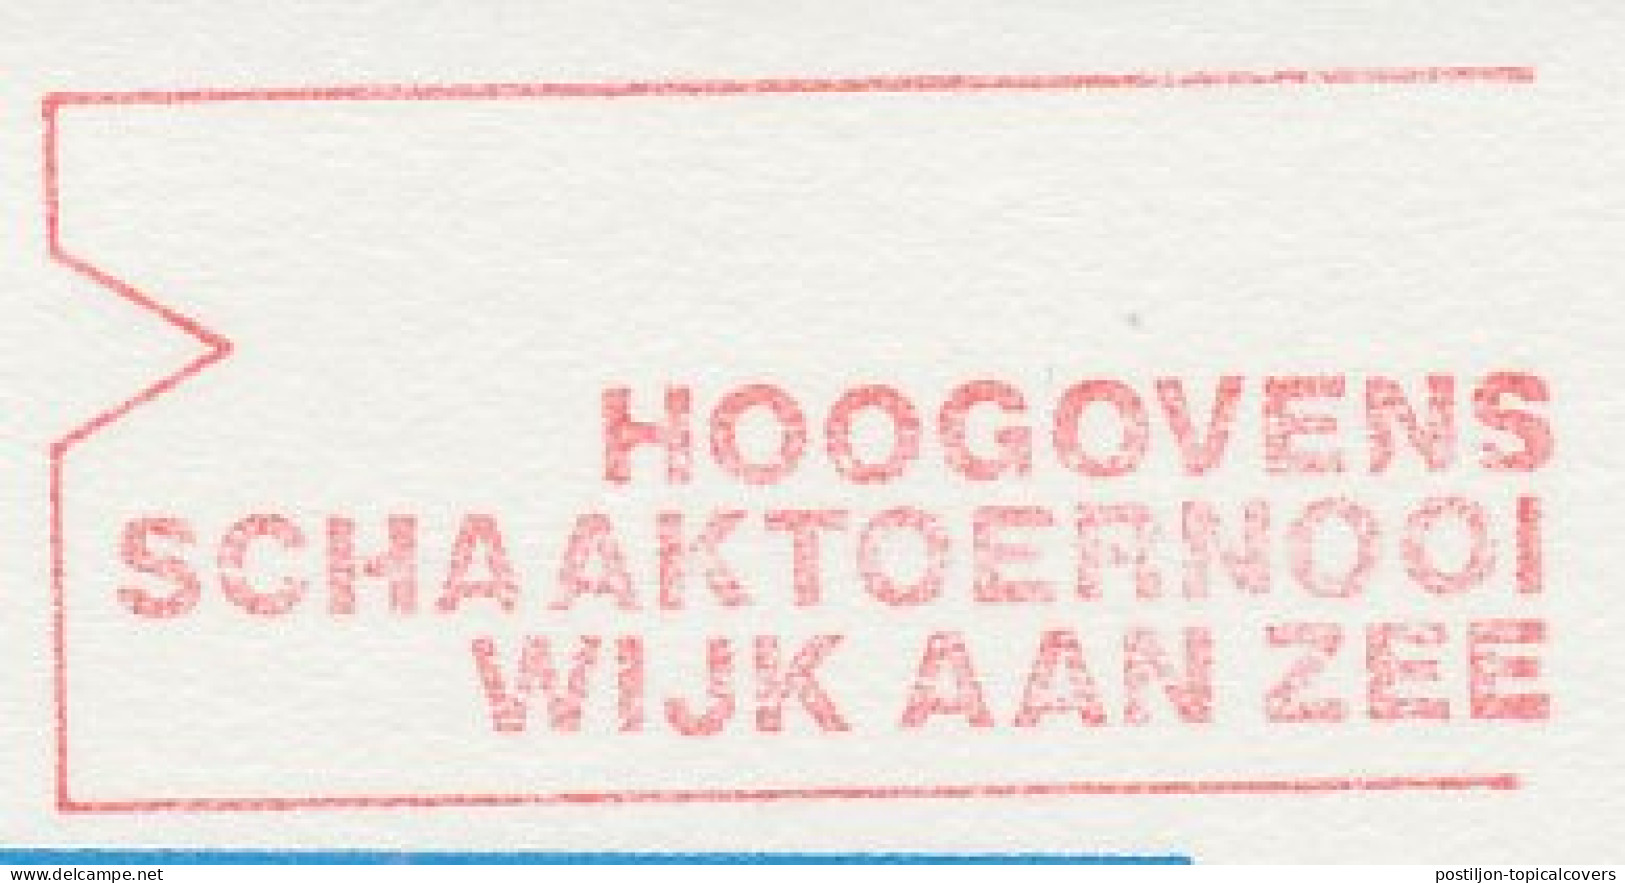 Meter Top Cut Netherlands 1986 Hoogovens Chess Tournament - Wijk Aan Zee - Zonder Classificatie